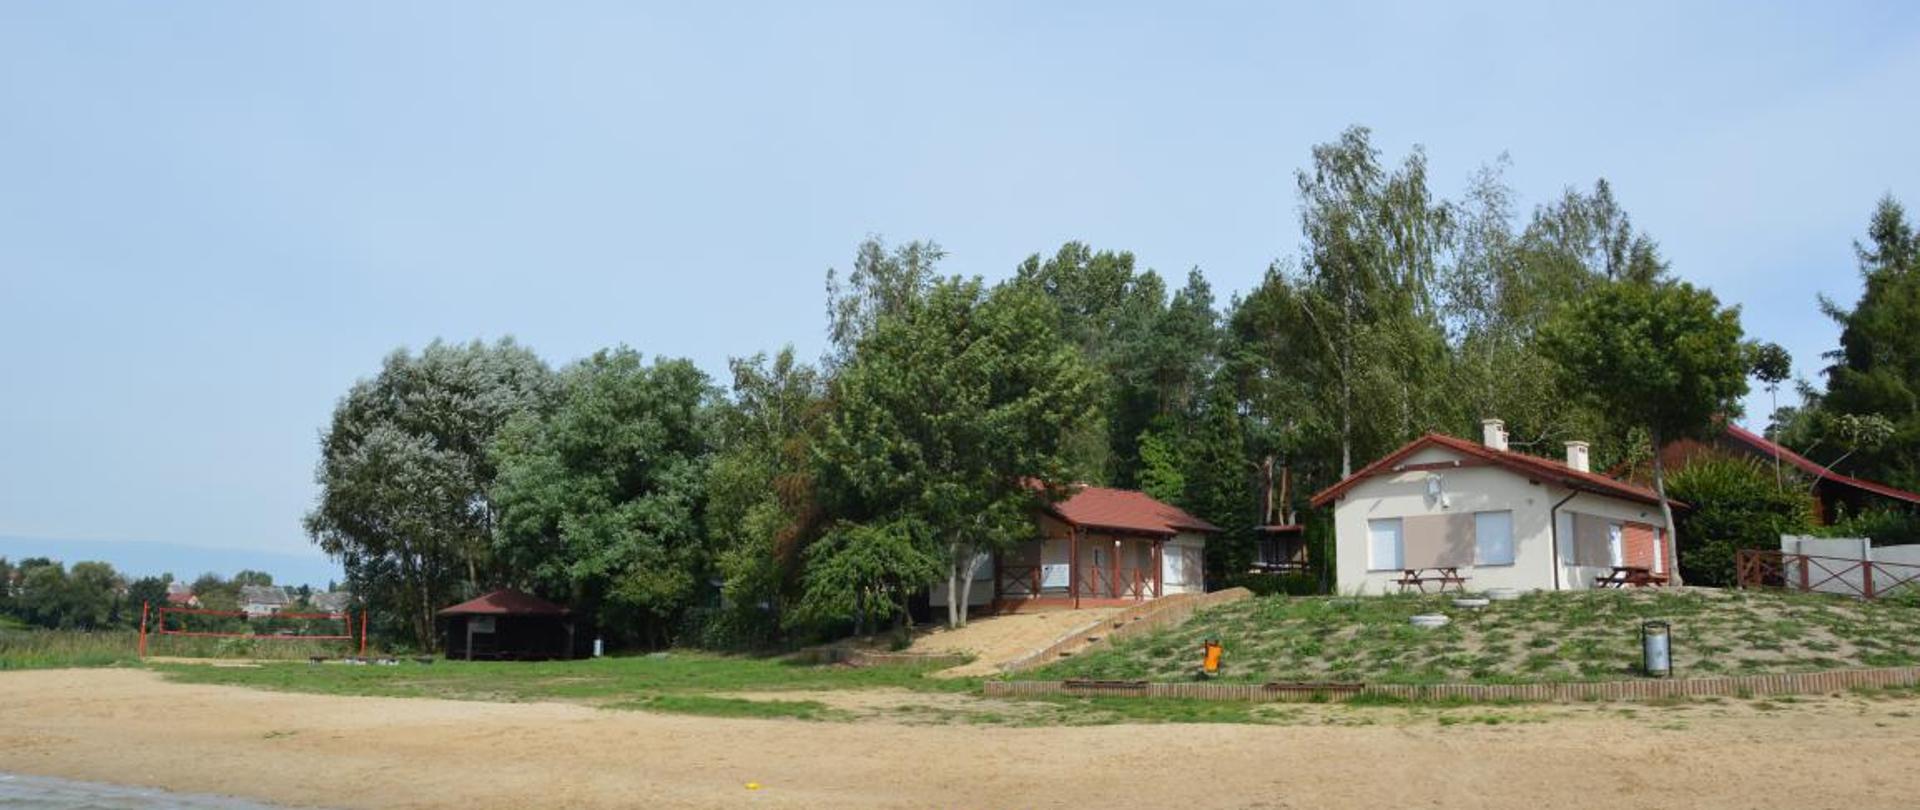 Stworzenie bazy rekreacyjnej nad jeziorem Łopienno w miejscowości Laskowo